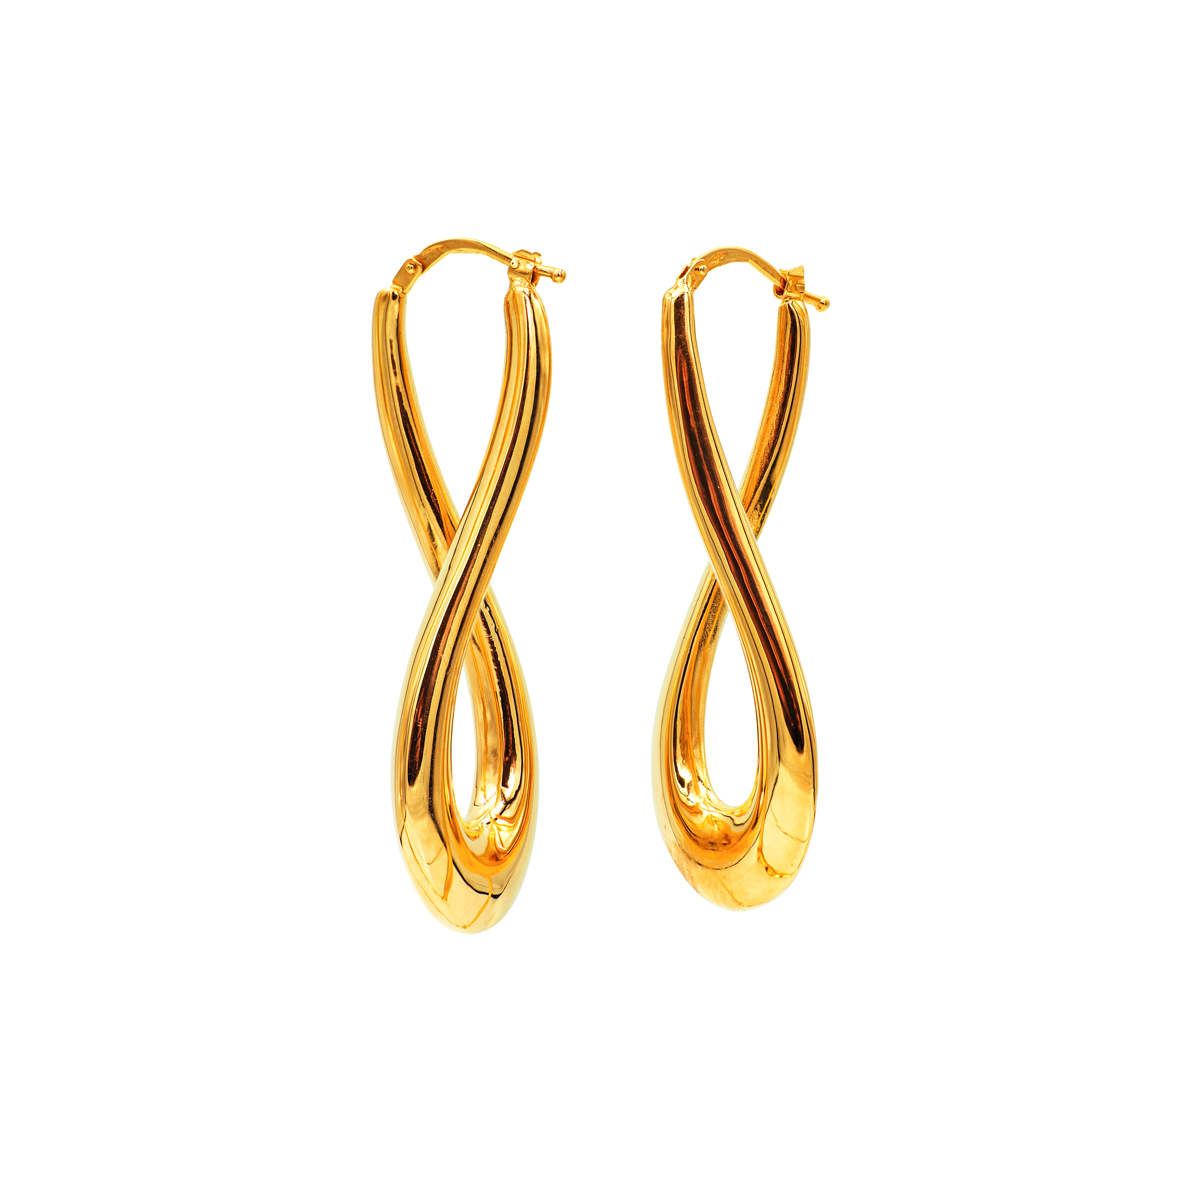 Twisted Teardrop Hoop Earrings in 14k Yellow Gold